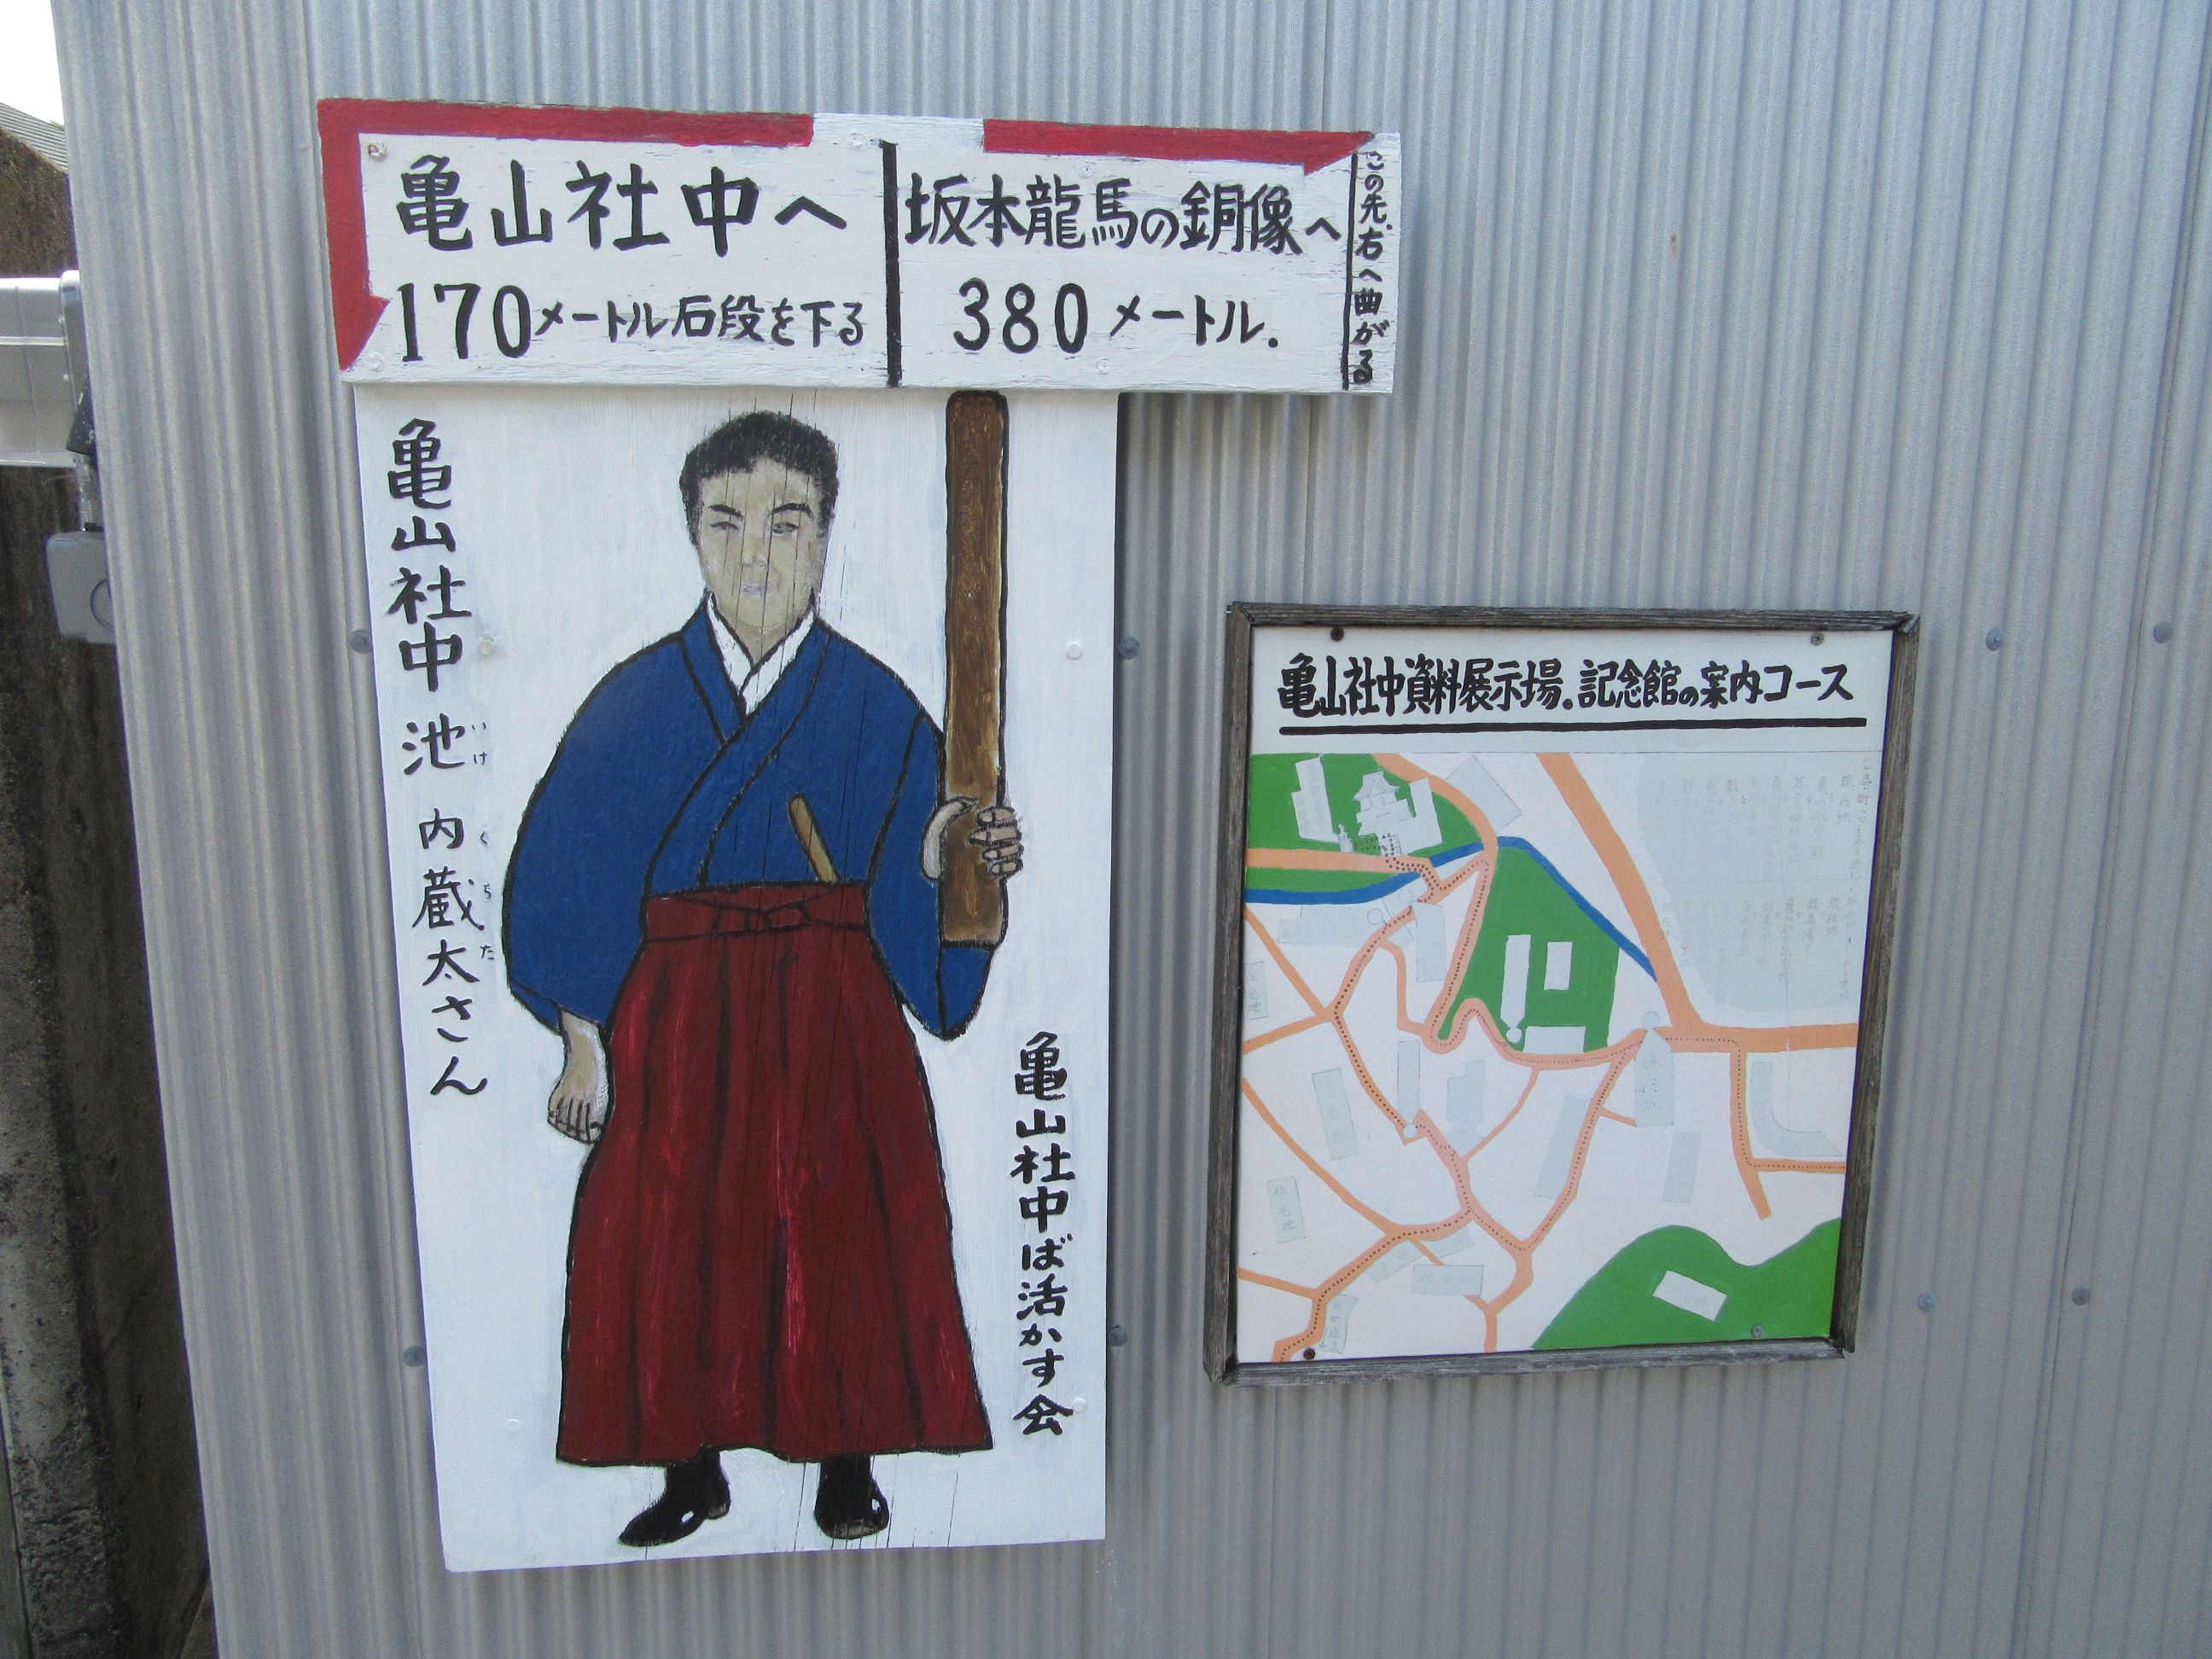 長崎県長崎市の風頭公園付近にて山田隆一が撮影しました。『亀山社中ば活かす会』という地元の有志団体が作成した看板で、池内蔵太の絵があり、亀山社中までの道を案内しています。